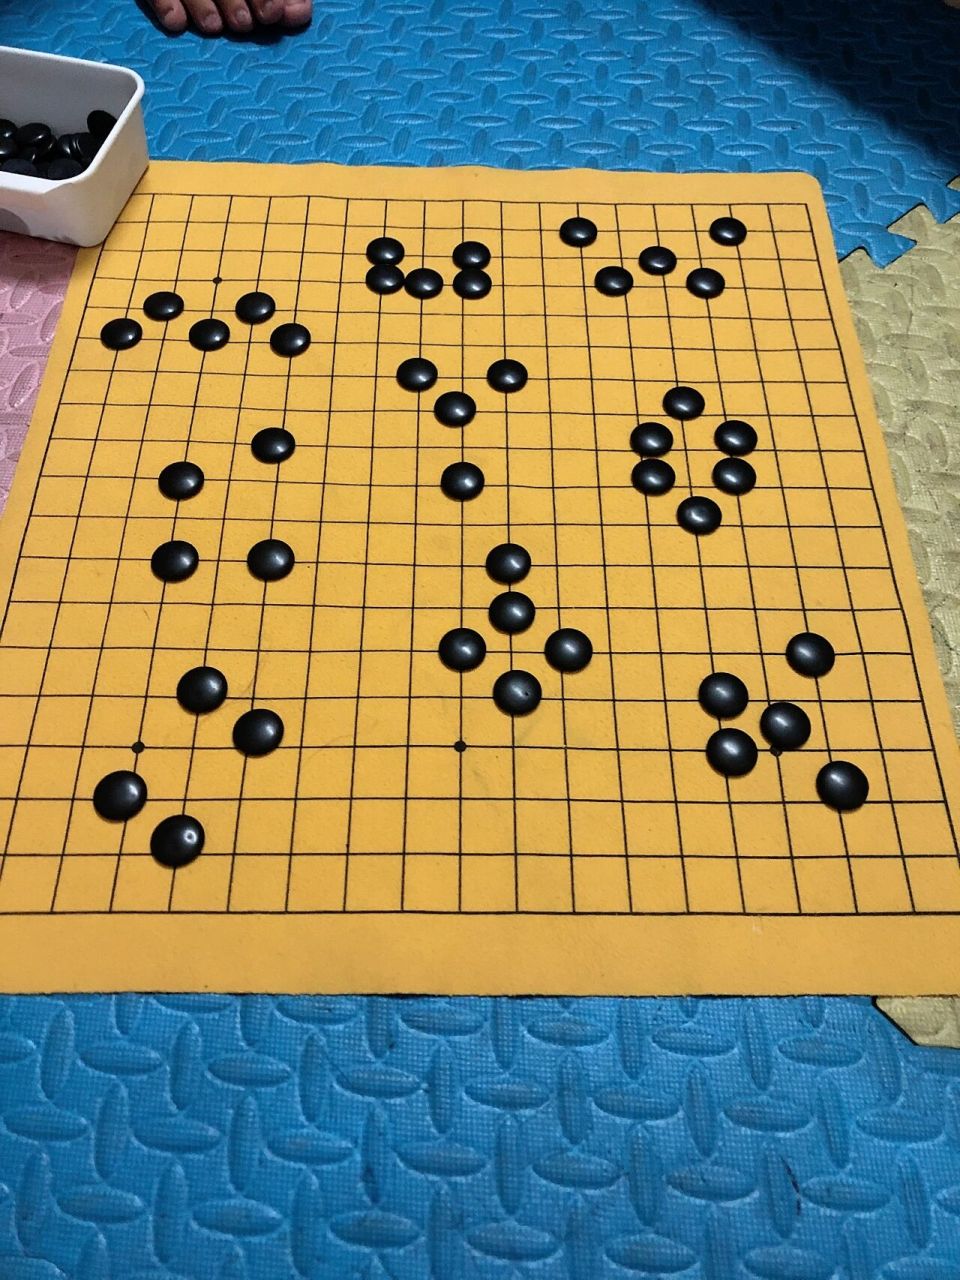 五子棋各种阵法图片